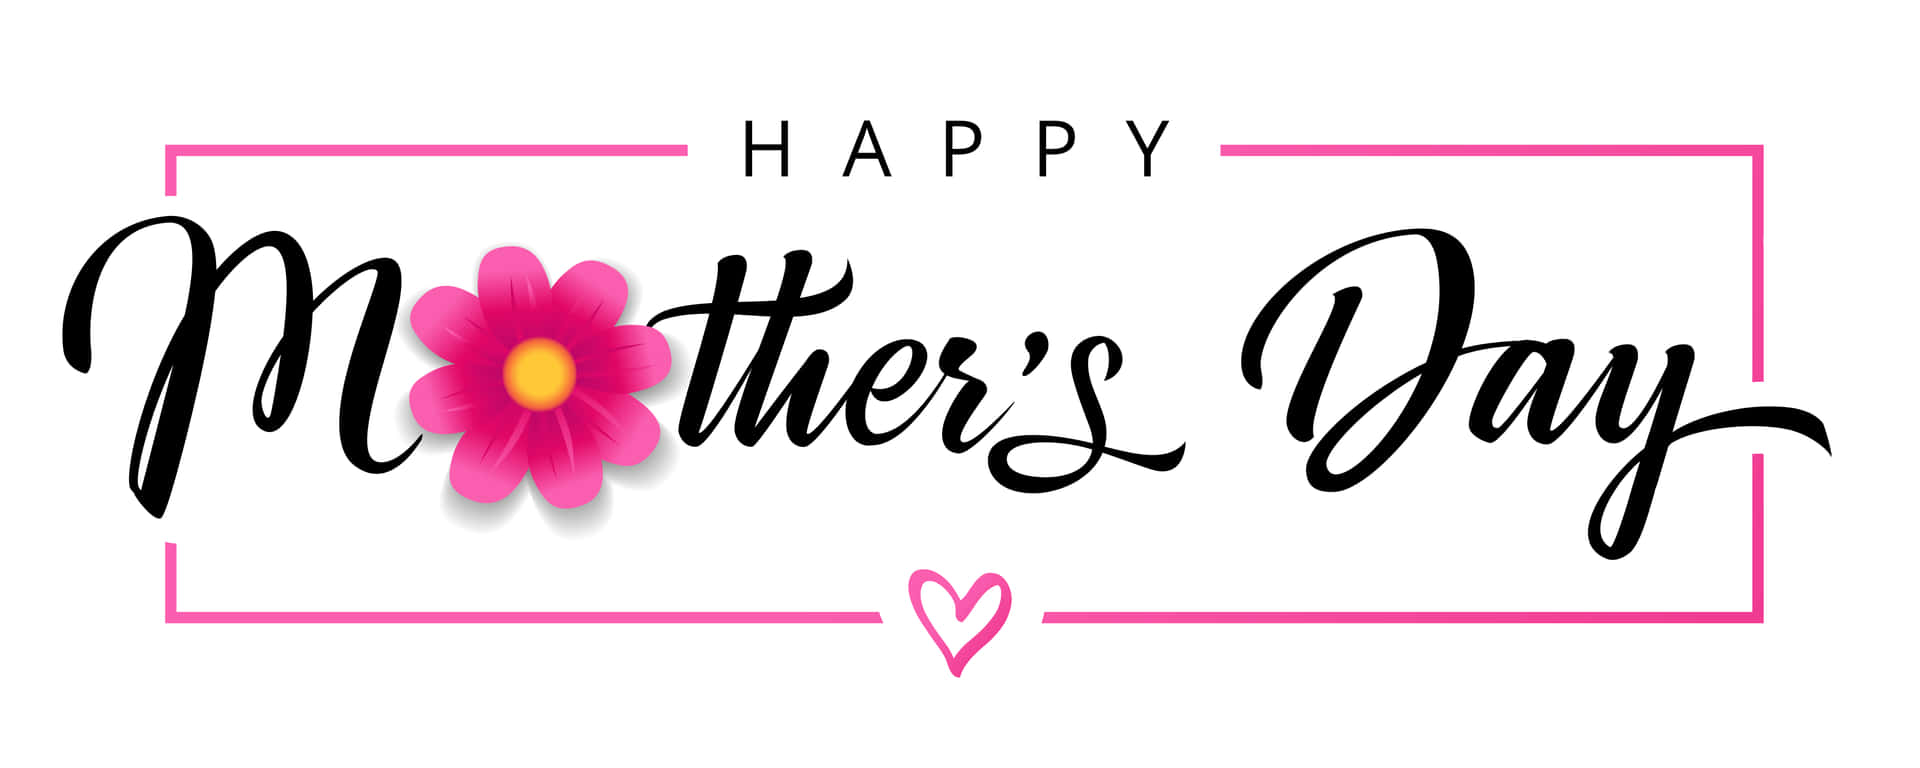 Allesgute Zum Muttertag! Feiere Die Besonderen Frauen In Deinem Leben Mit Liebe Und Wertschätzung. Wallpaper